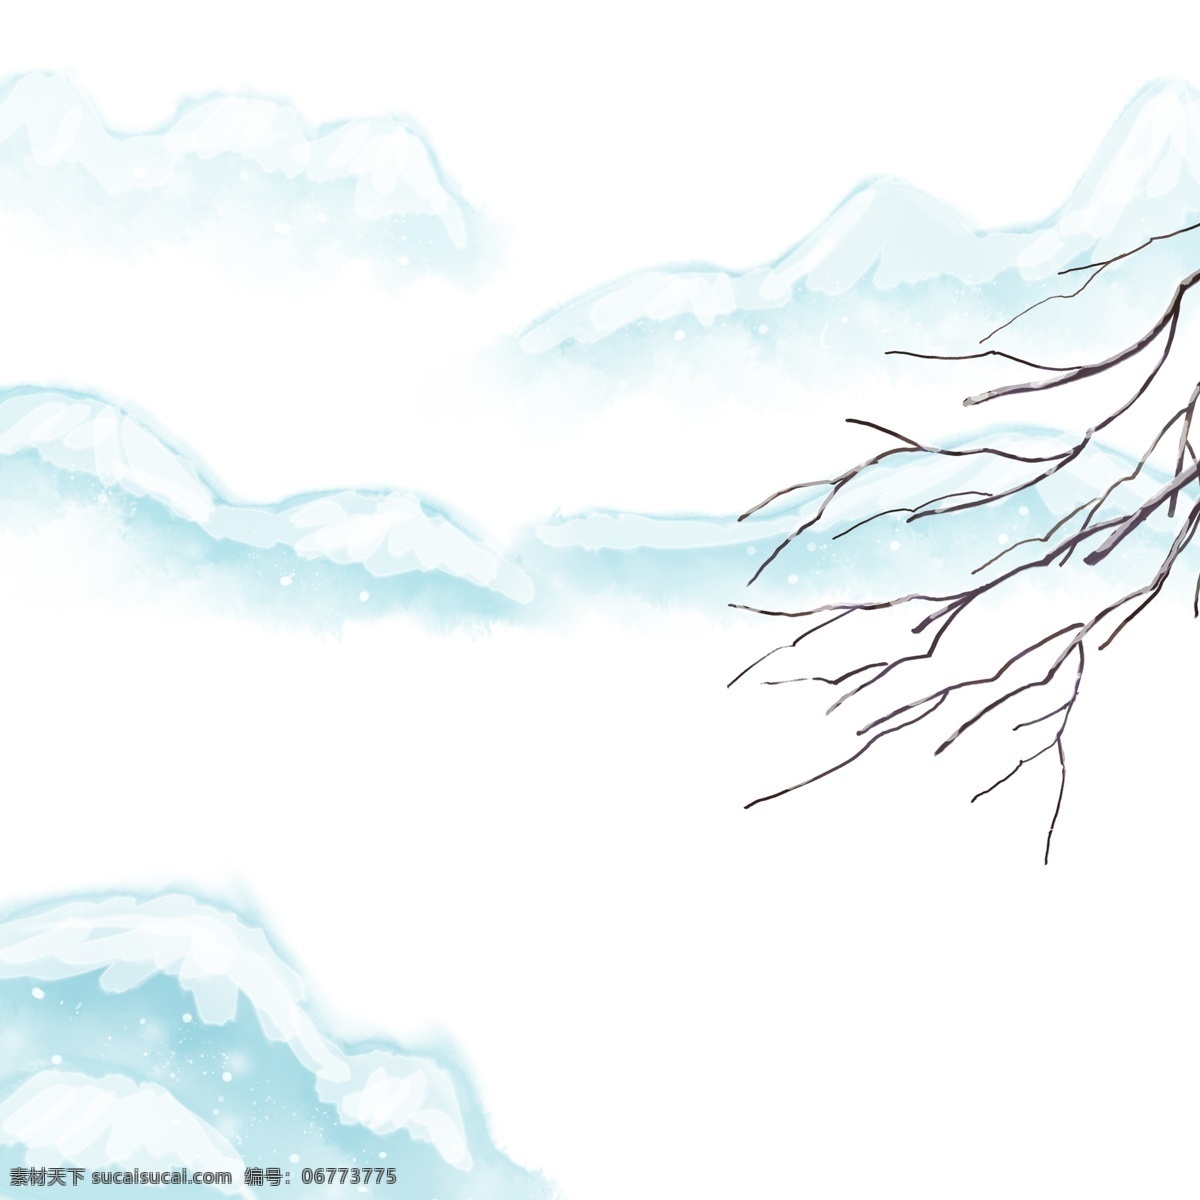 卡通 手绘 中国 风 覆盖 雪 山峰 卡通手绘 中国风 水彩 水墨 小清新 唯美 冬天 冬季 覆盖雪的山峰 覆盖雪的树枝